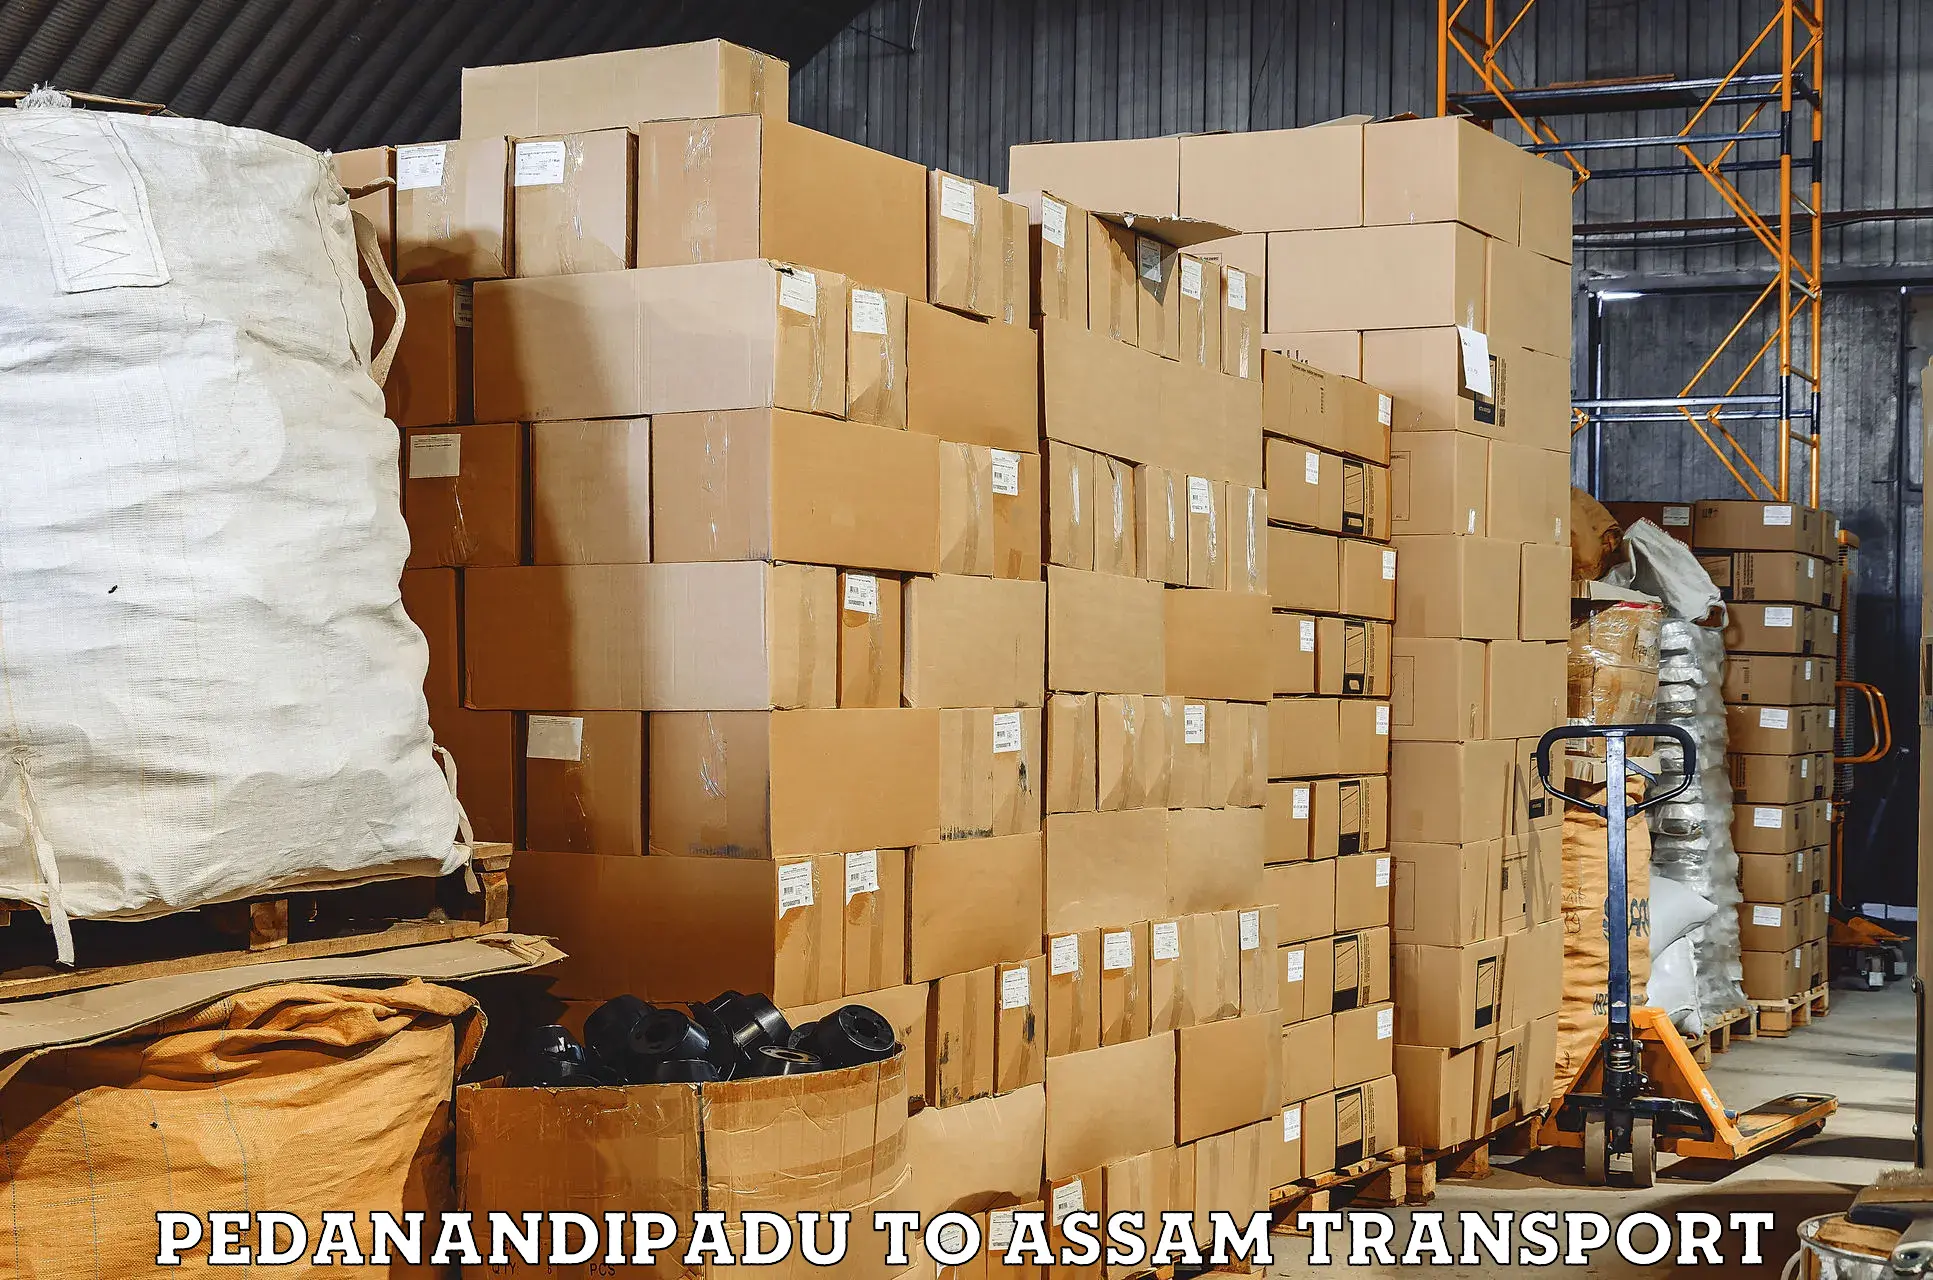 Express transport services Pedanandipadu to Assam